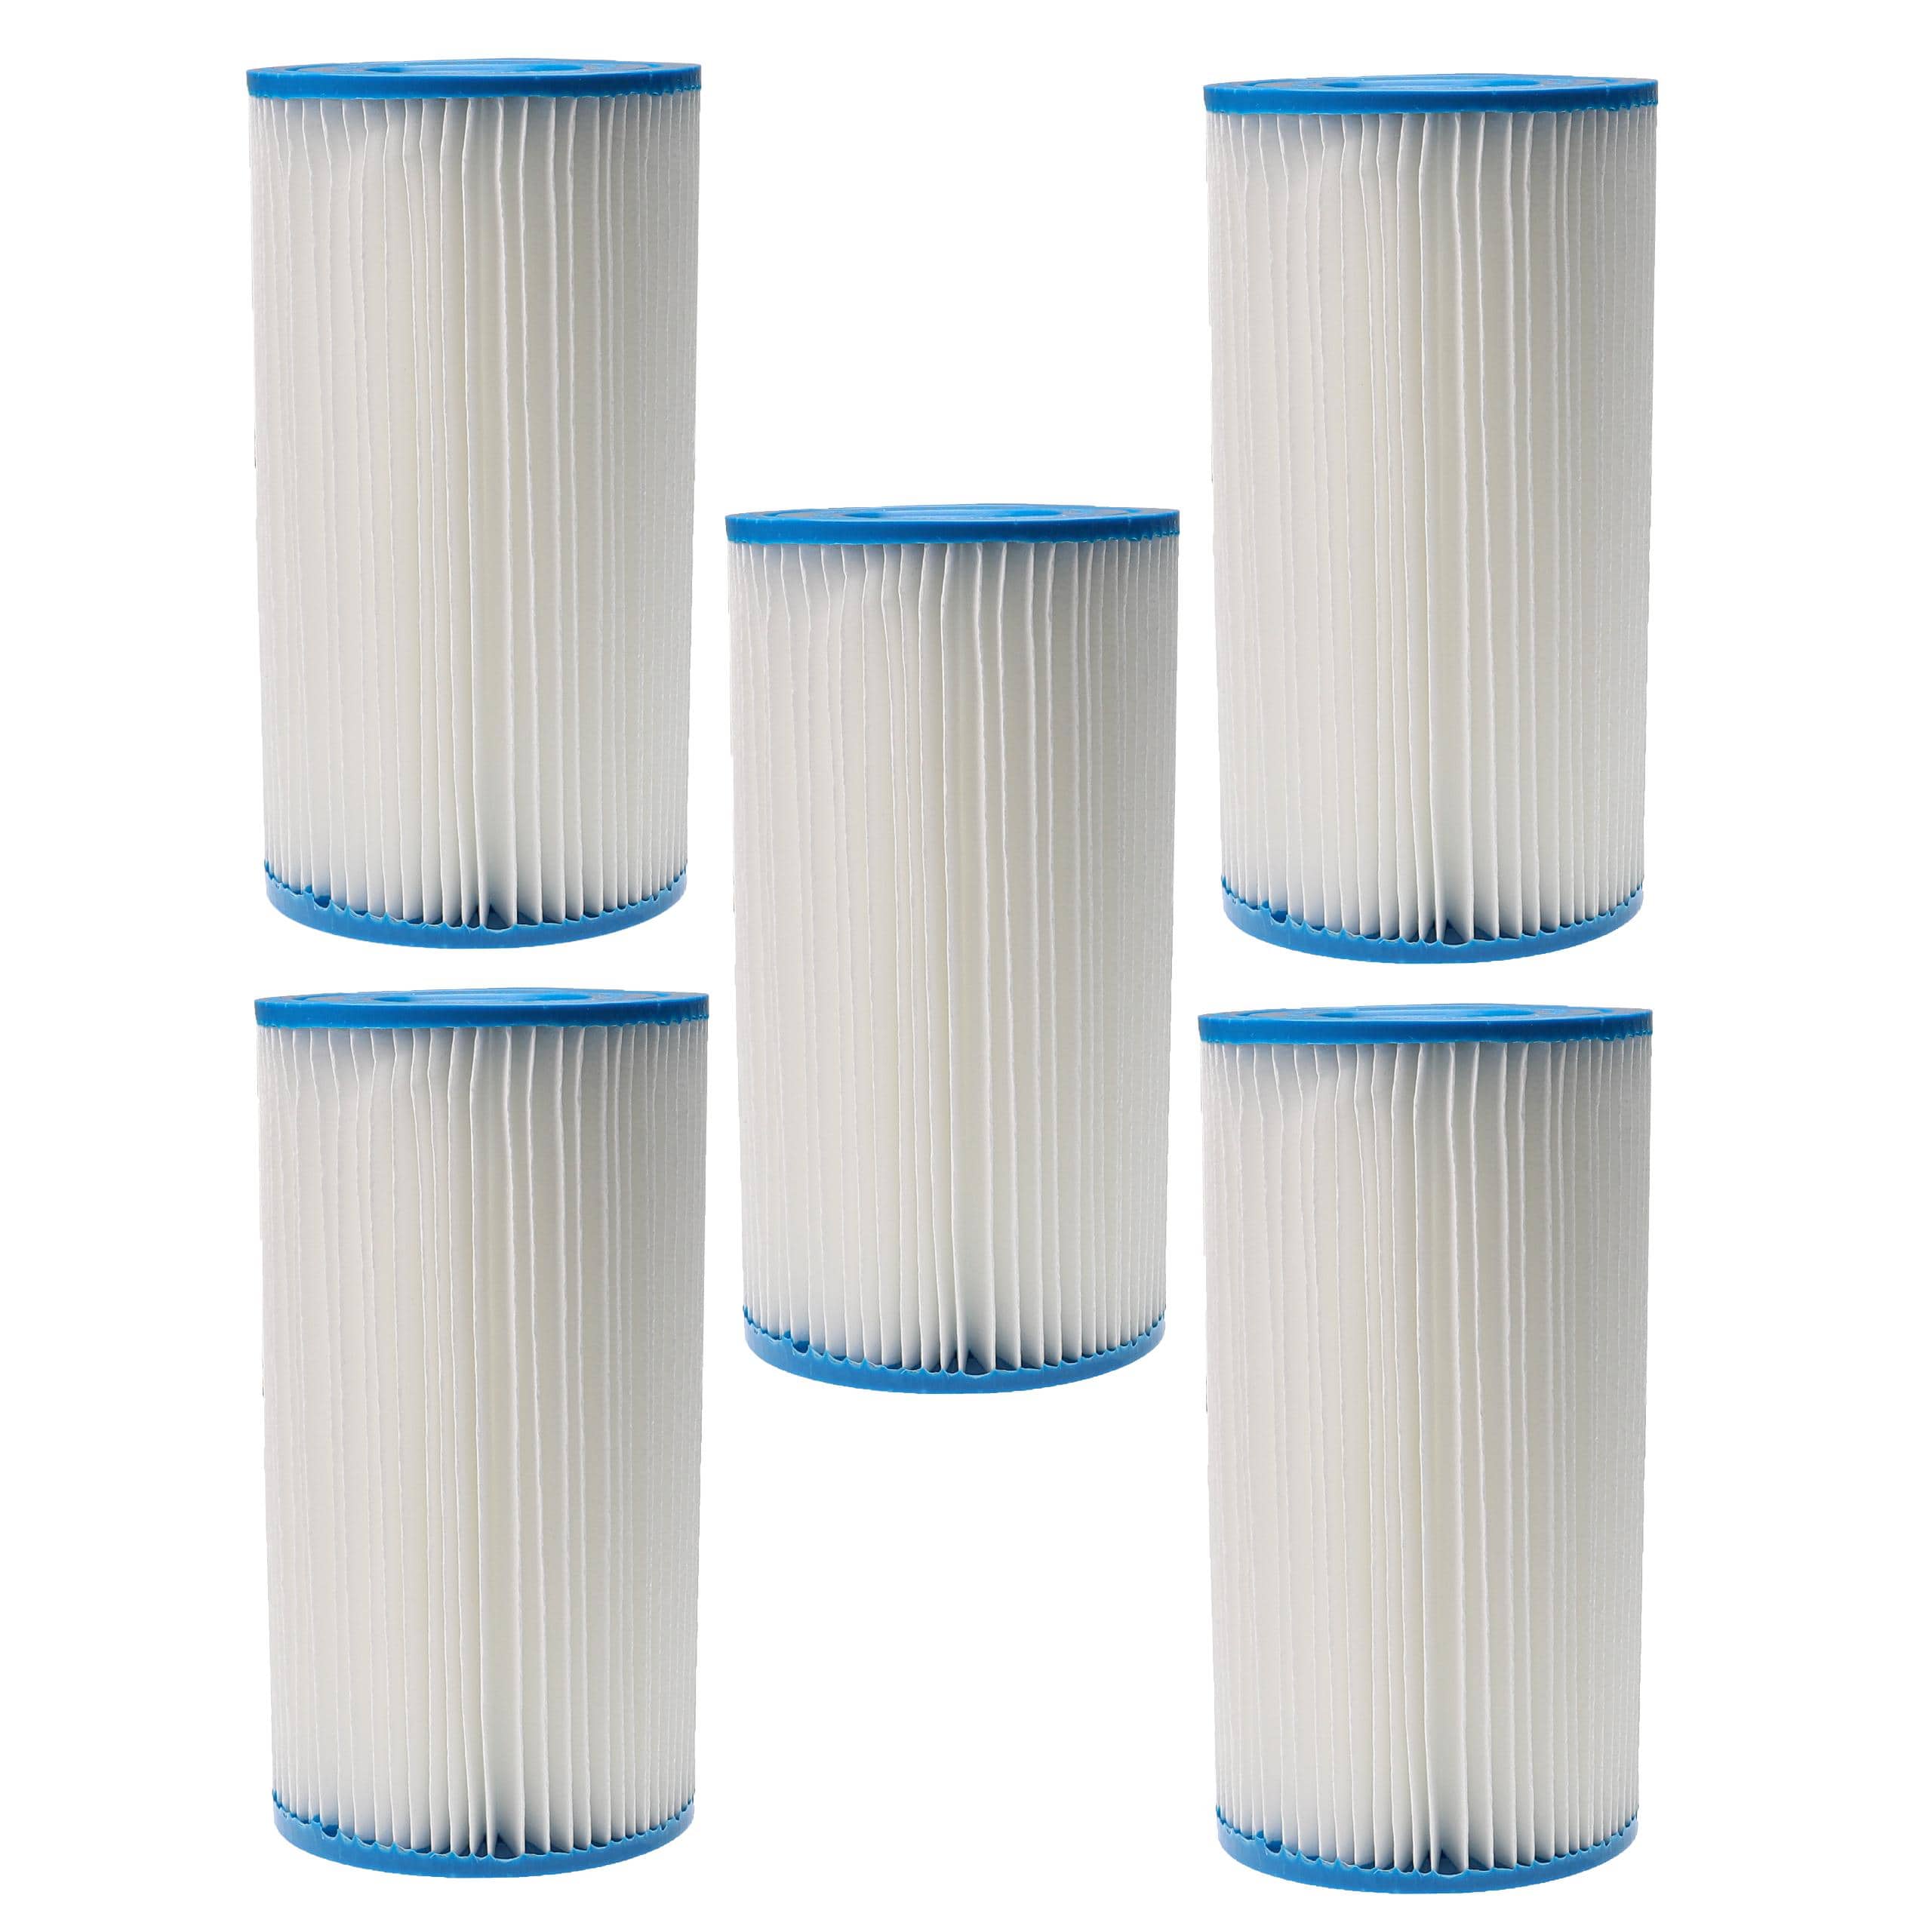 5x filtro de agua reemplaza Intex filtro tipo A para piscina y bomba de filtro Intex - Cartucho de filtro